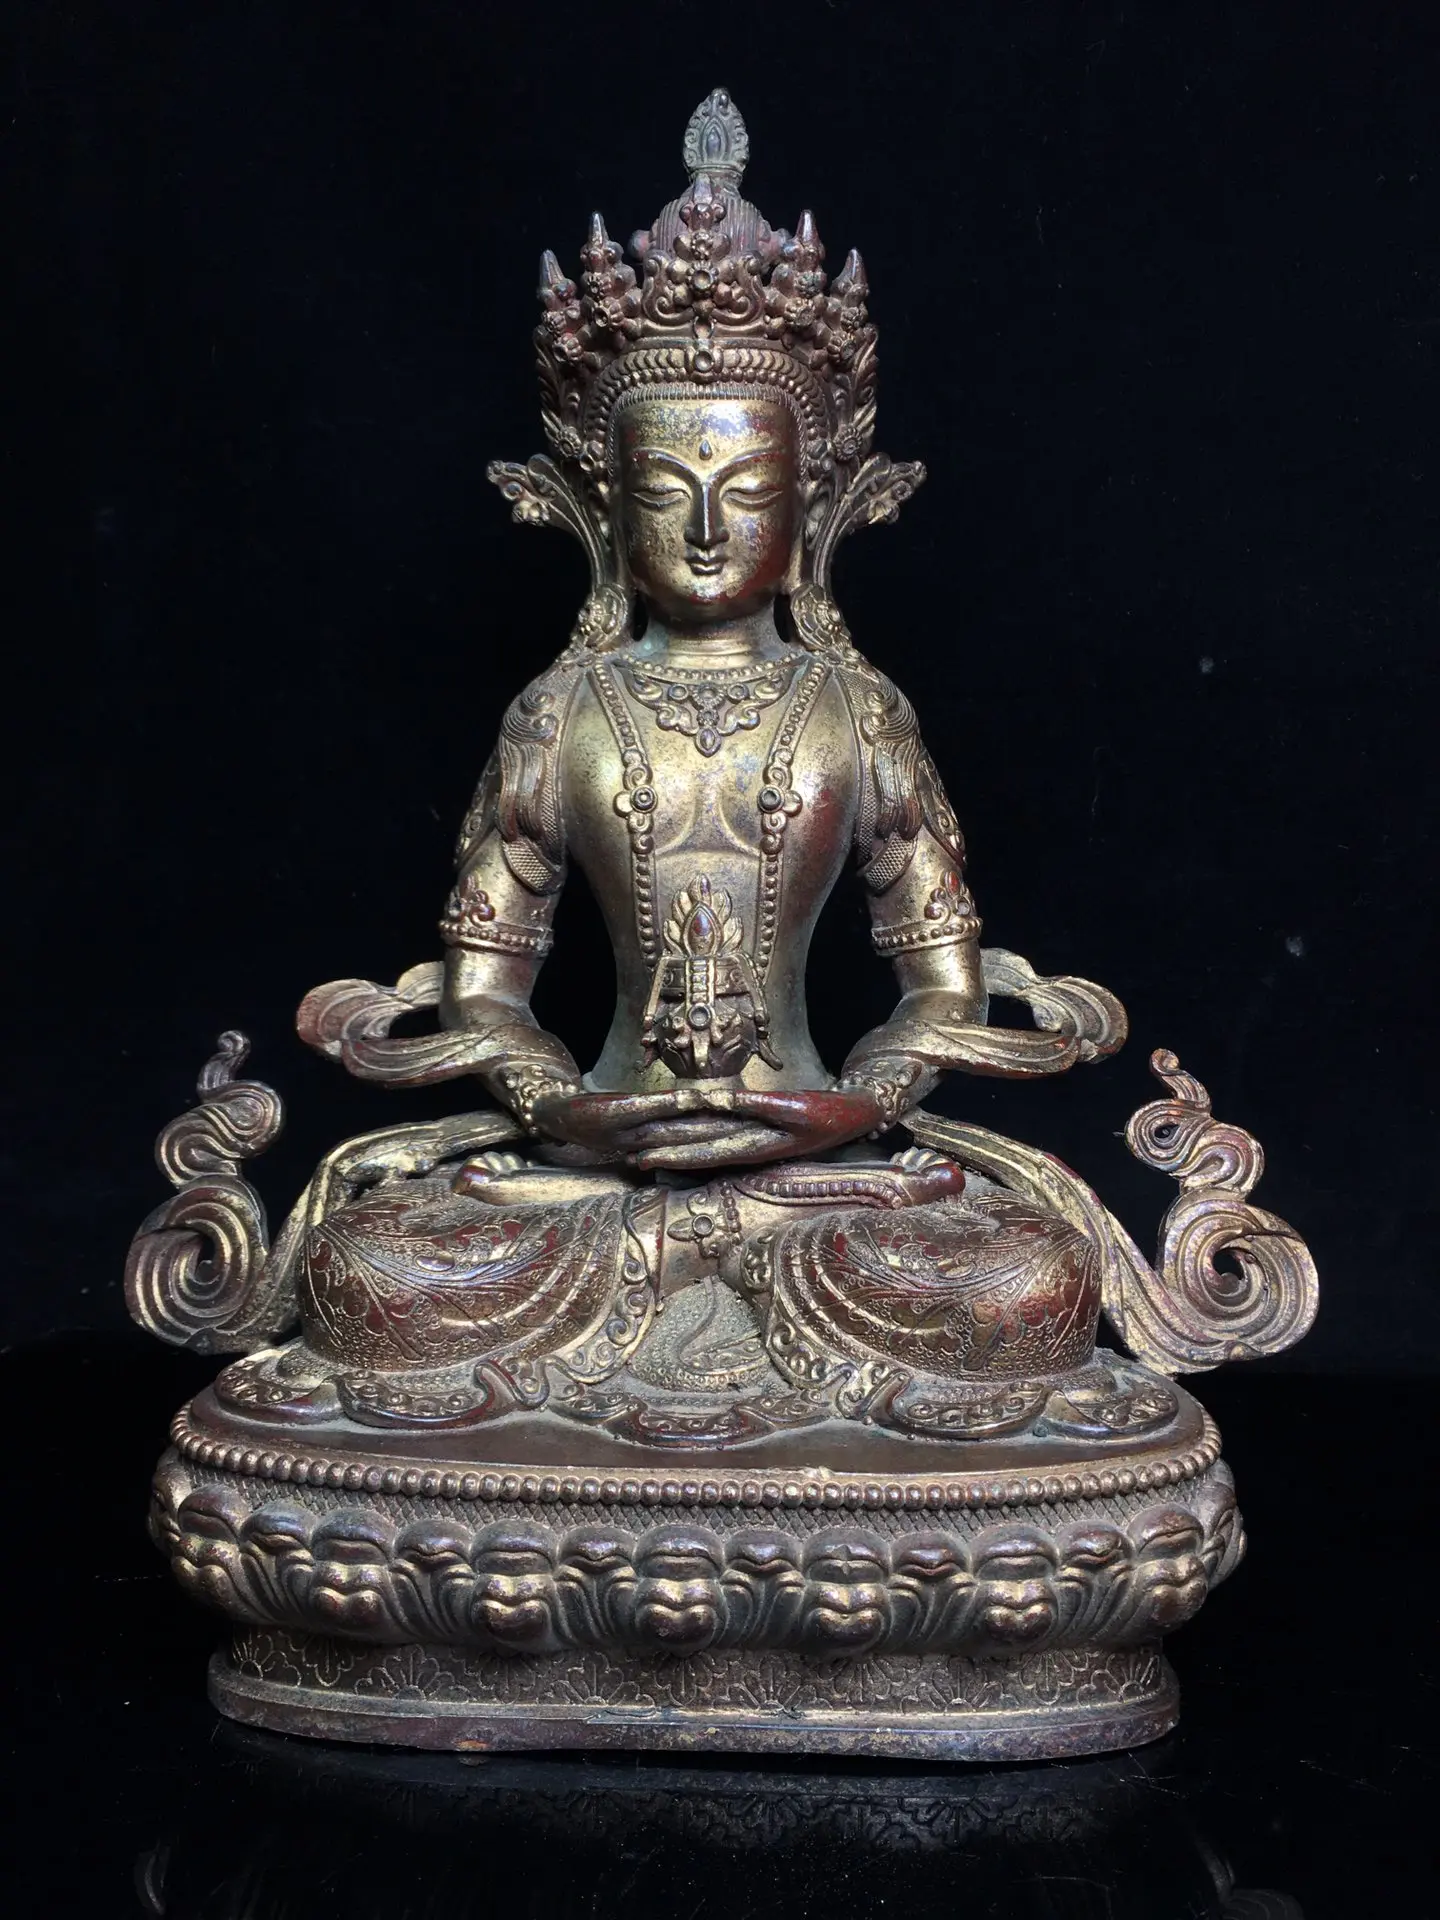 

Коллекция тибетских храмов, 12 дюймов, старинная бронза, грязь циннабара, золото, долголетие Будды Infinite Life Wisdom Tathagata для поклонения Будде